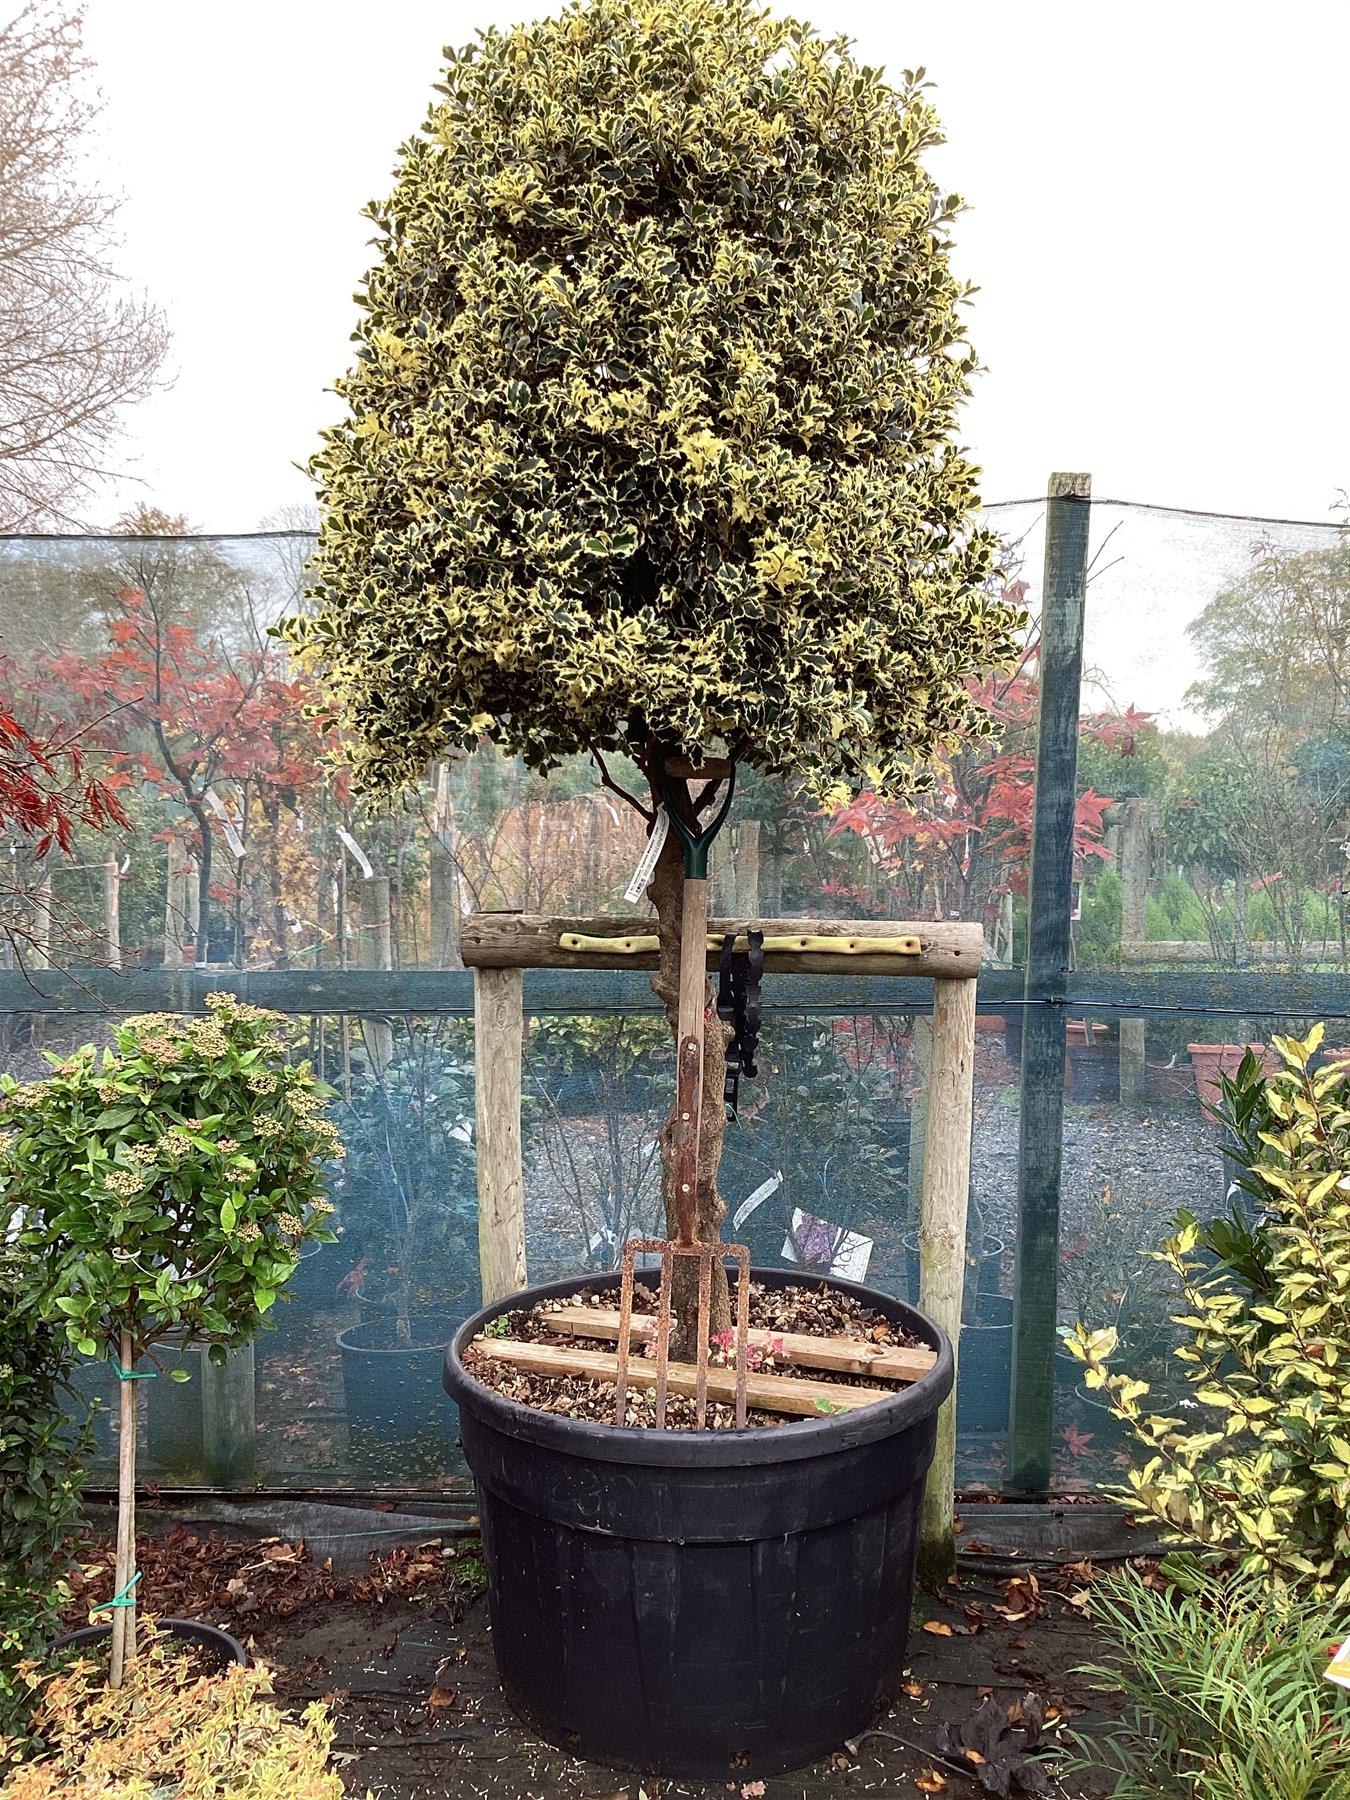 Ilex aquifolium 'Argentea Marginata' | Silver Variegated Holly - 260-270cm, 230lt